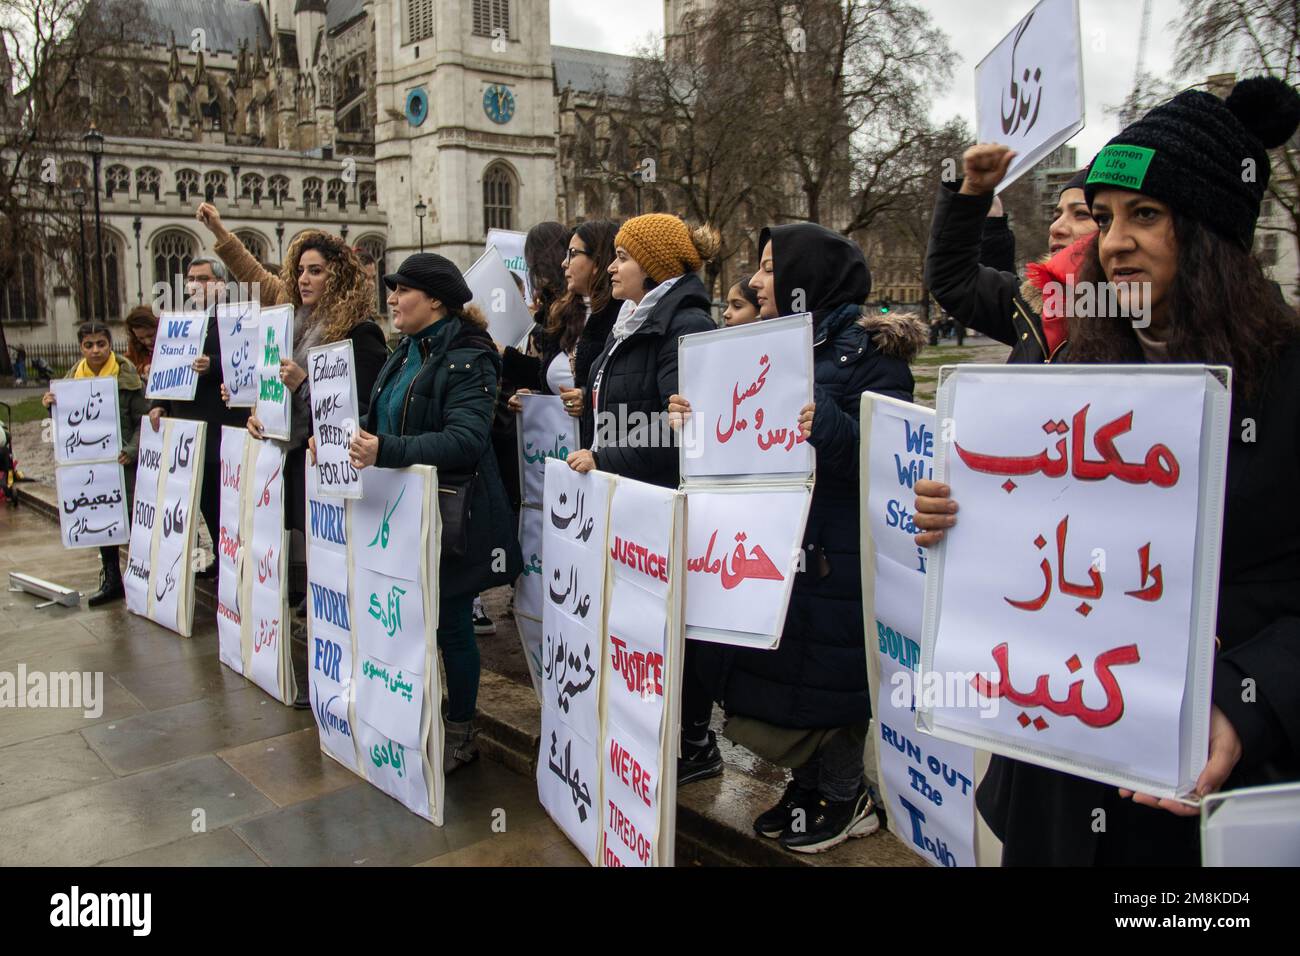 London, Vereinigtes Königreich - 14. Januar 2023: Protest auf dem Parlamentsplatz für Gerechtigkeit und Gleichheit in Afghanistan, nachdem die Taliban den Frauen das Recht auf Bildung entzogen hatten. Die Schilder sind auf Persisch und Englisch. Kredit: Sinai Noor/Alamy Live News Stockfoto